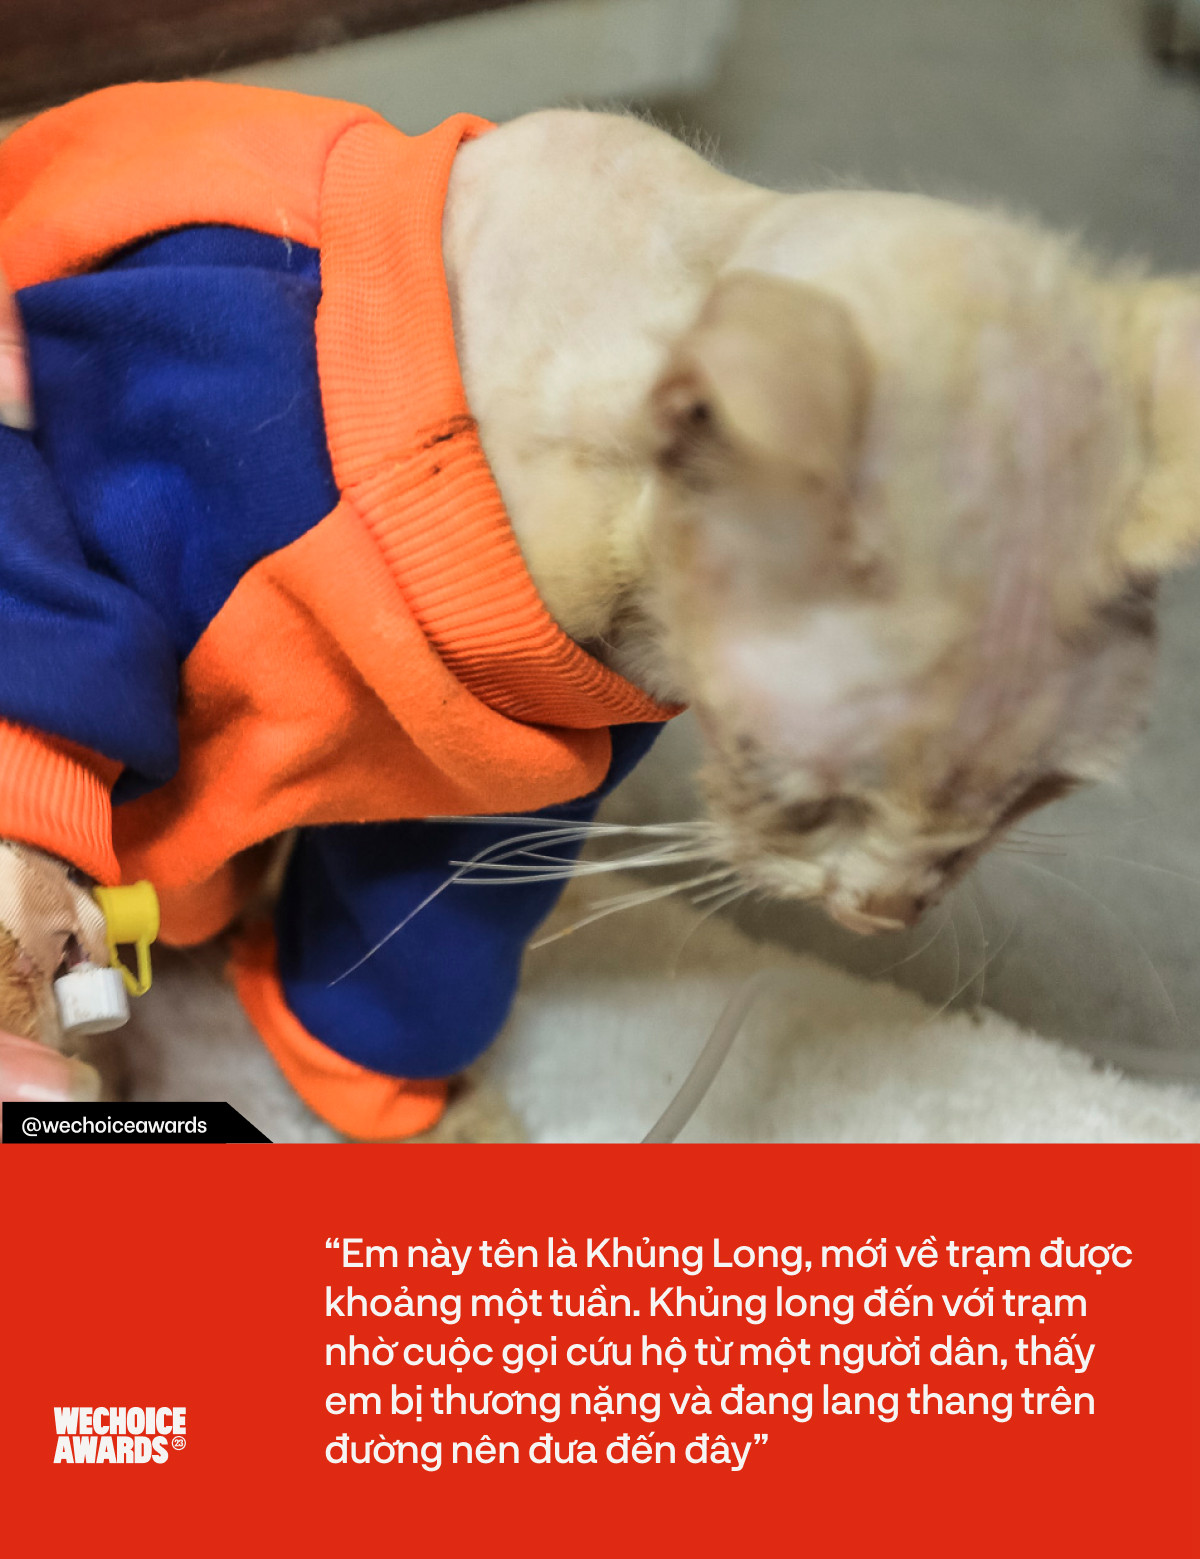 Trạm cứu hộ chó, mèo của các bạn sinh viên ở Hà Nội: “Chúng mình không muốn nhận được cuộc điện thoại nói rằng tại đây đang có động vật bị bỏ rơi” - Ảnh 3.